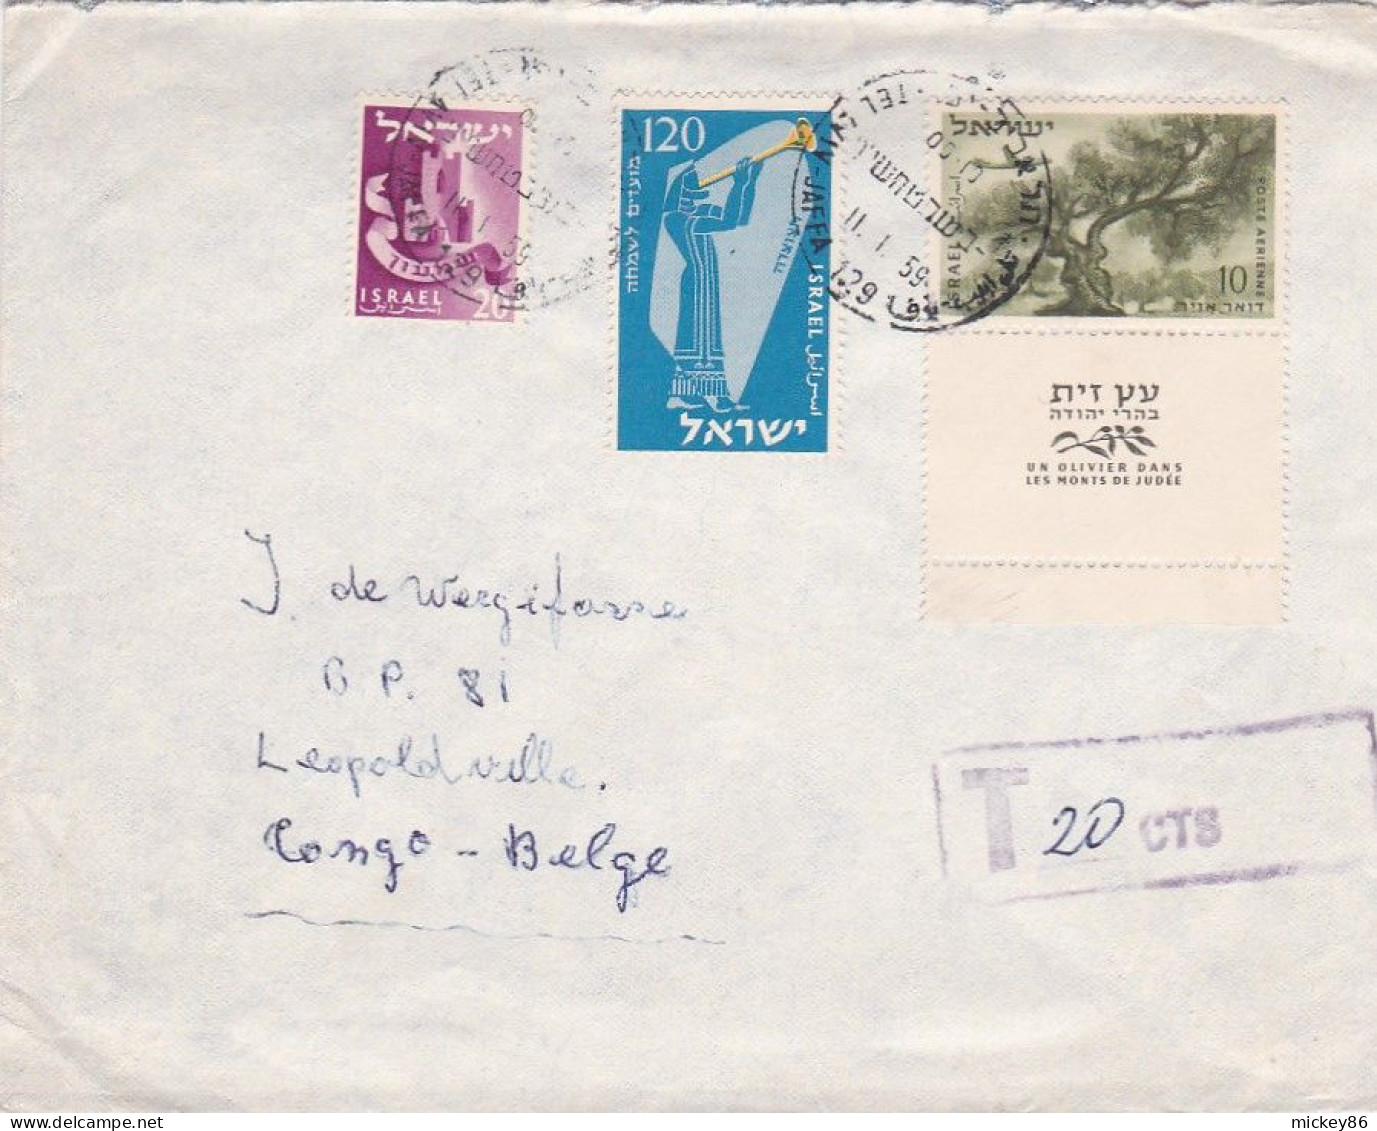 ISRAEL --1959--Lettre Taxée 20cts  De TEL AVIV  Pour LEOPOLDVILLE (Congo Belge)--timbres...cachet....griffe T 20cts - Covers & Documents